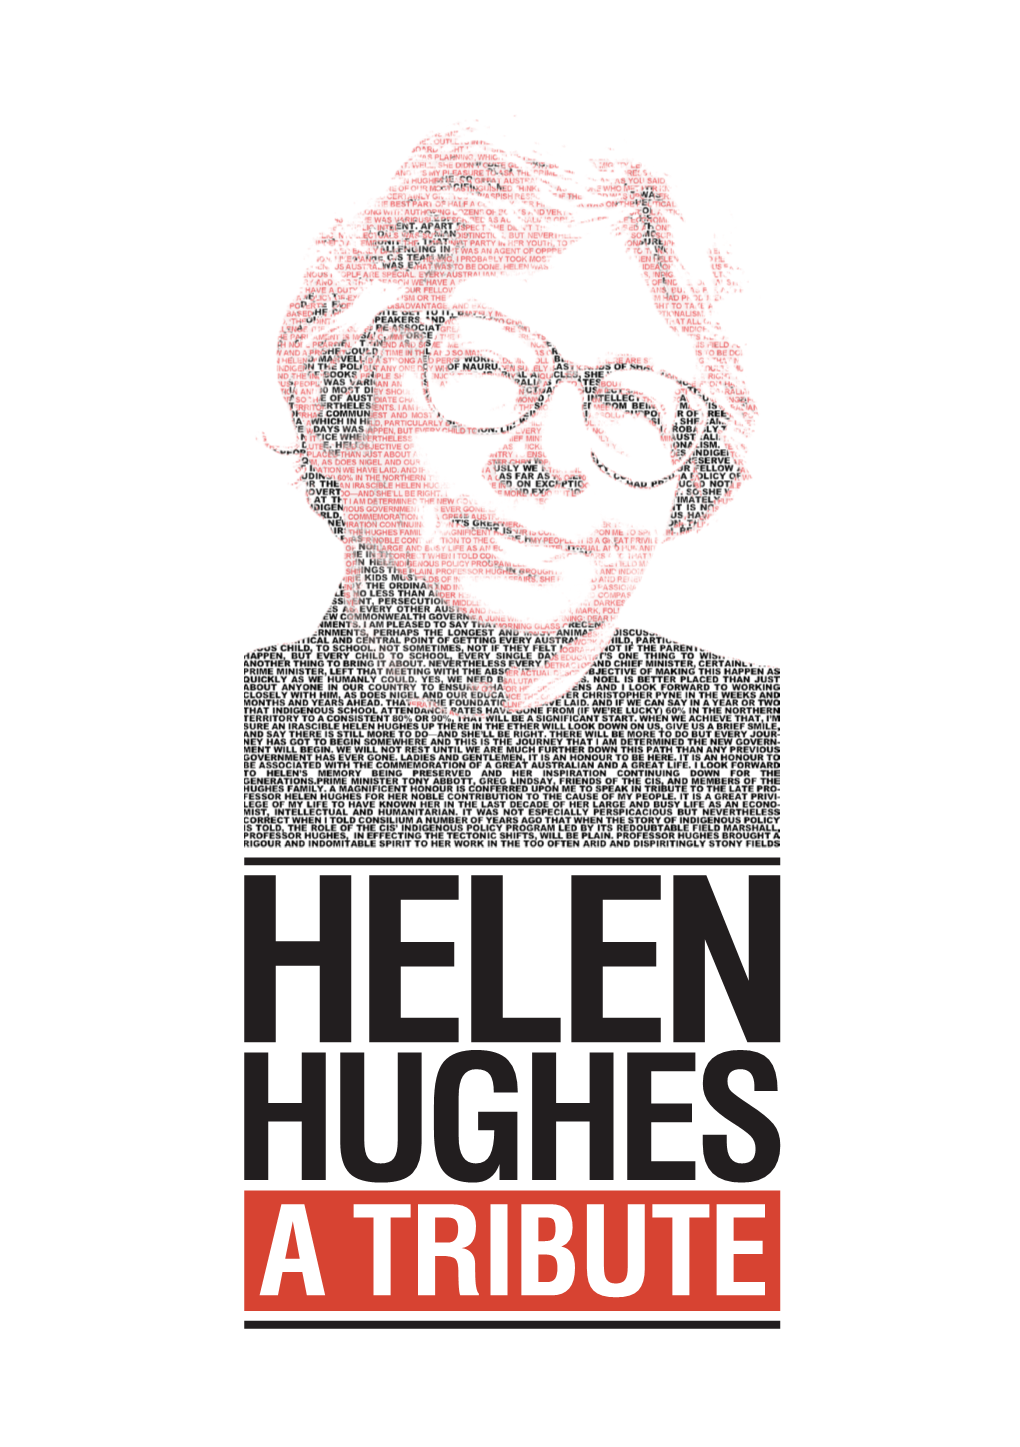 Helen Hughes AO (1 October 1928 – 15 June 2013)